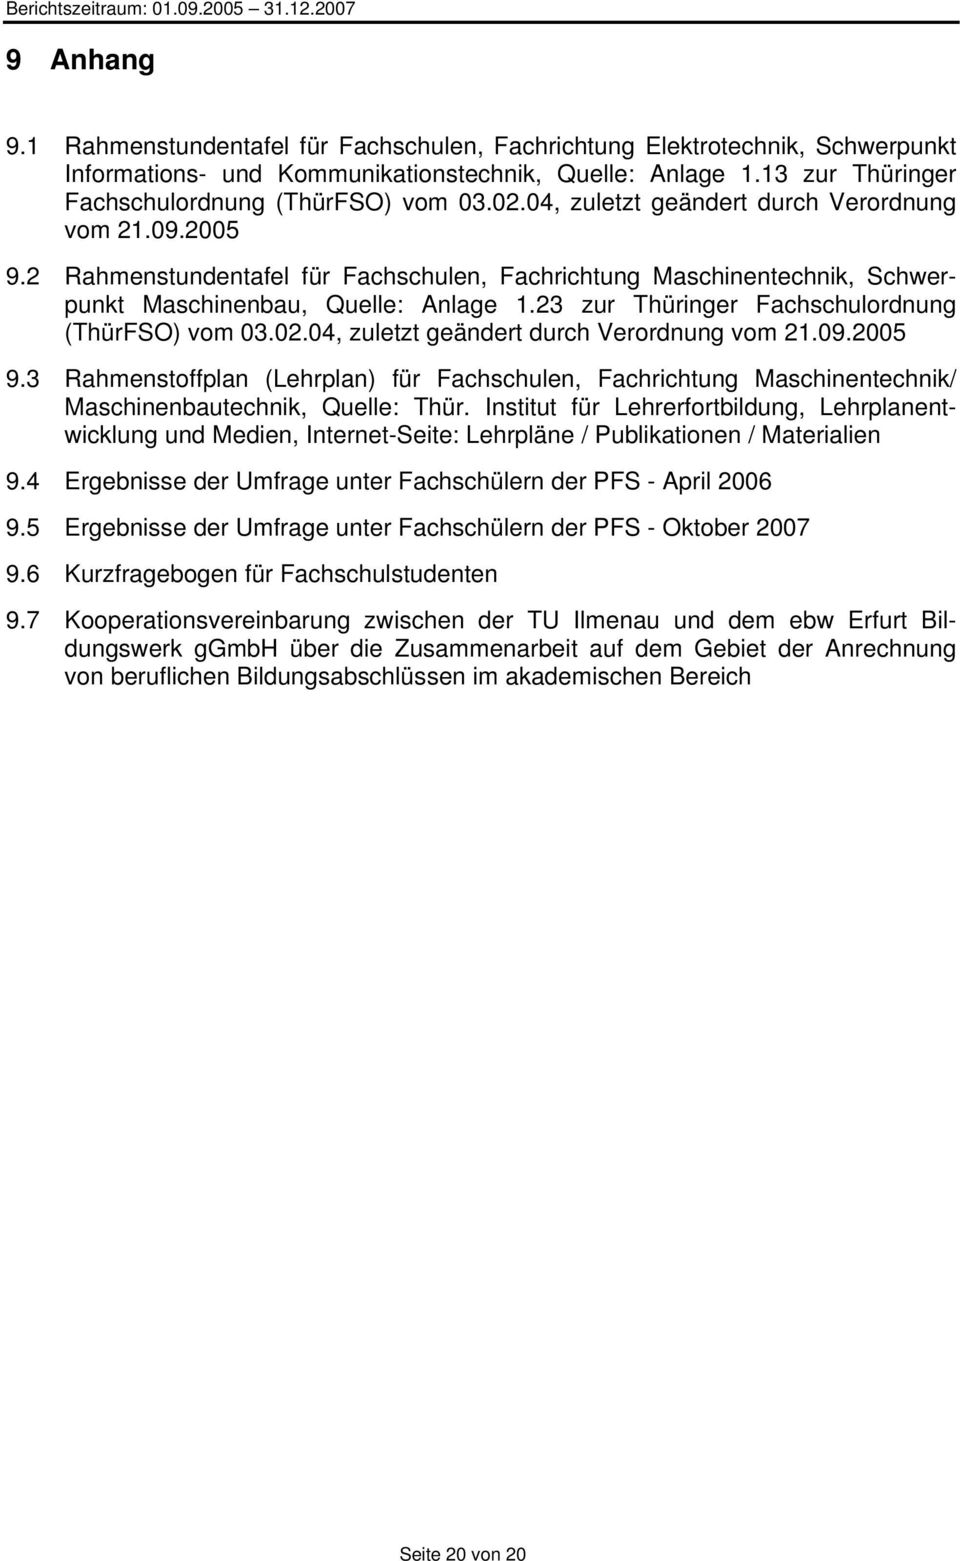 2 Rahmenstundentafel für Fachschulen, Fachrichtung Maschinentechnik, Schwerpunkt Maschinenbau, Quelle: Anlage 1.23 zur Thüringer Fachschulordnung (ThürFSO) vom 03.02.